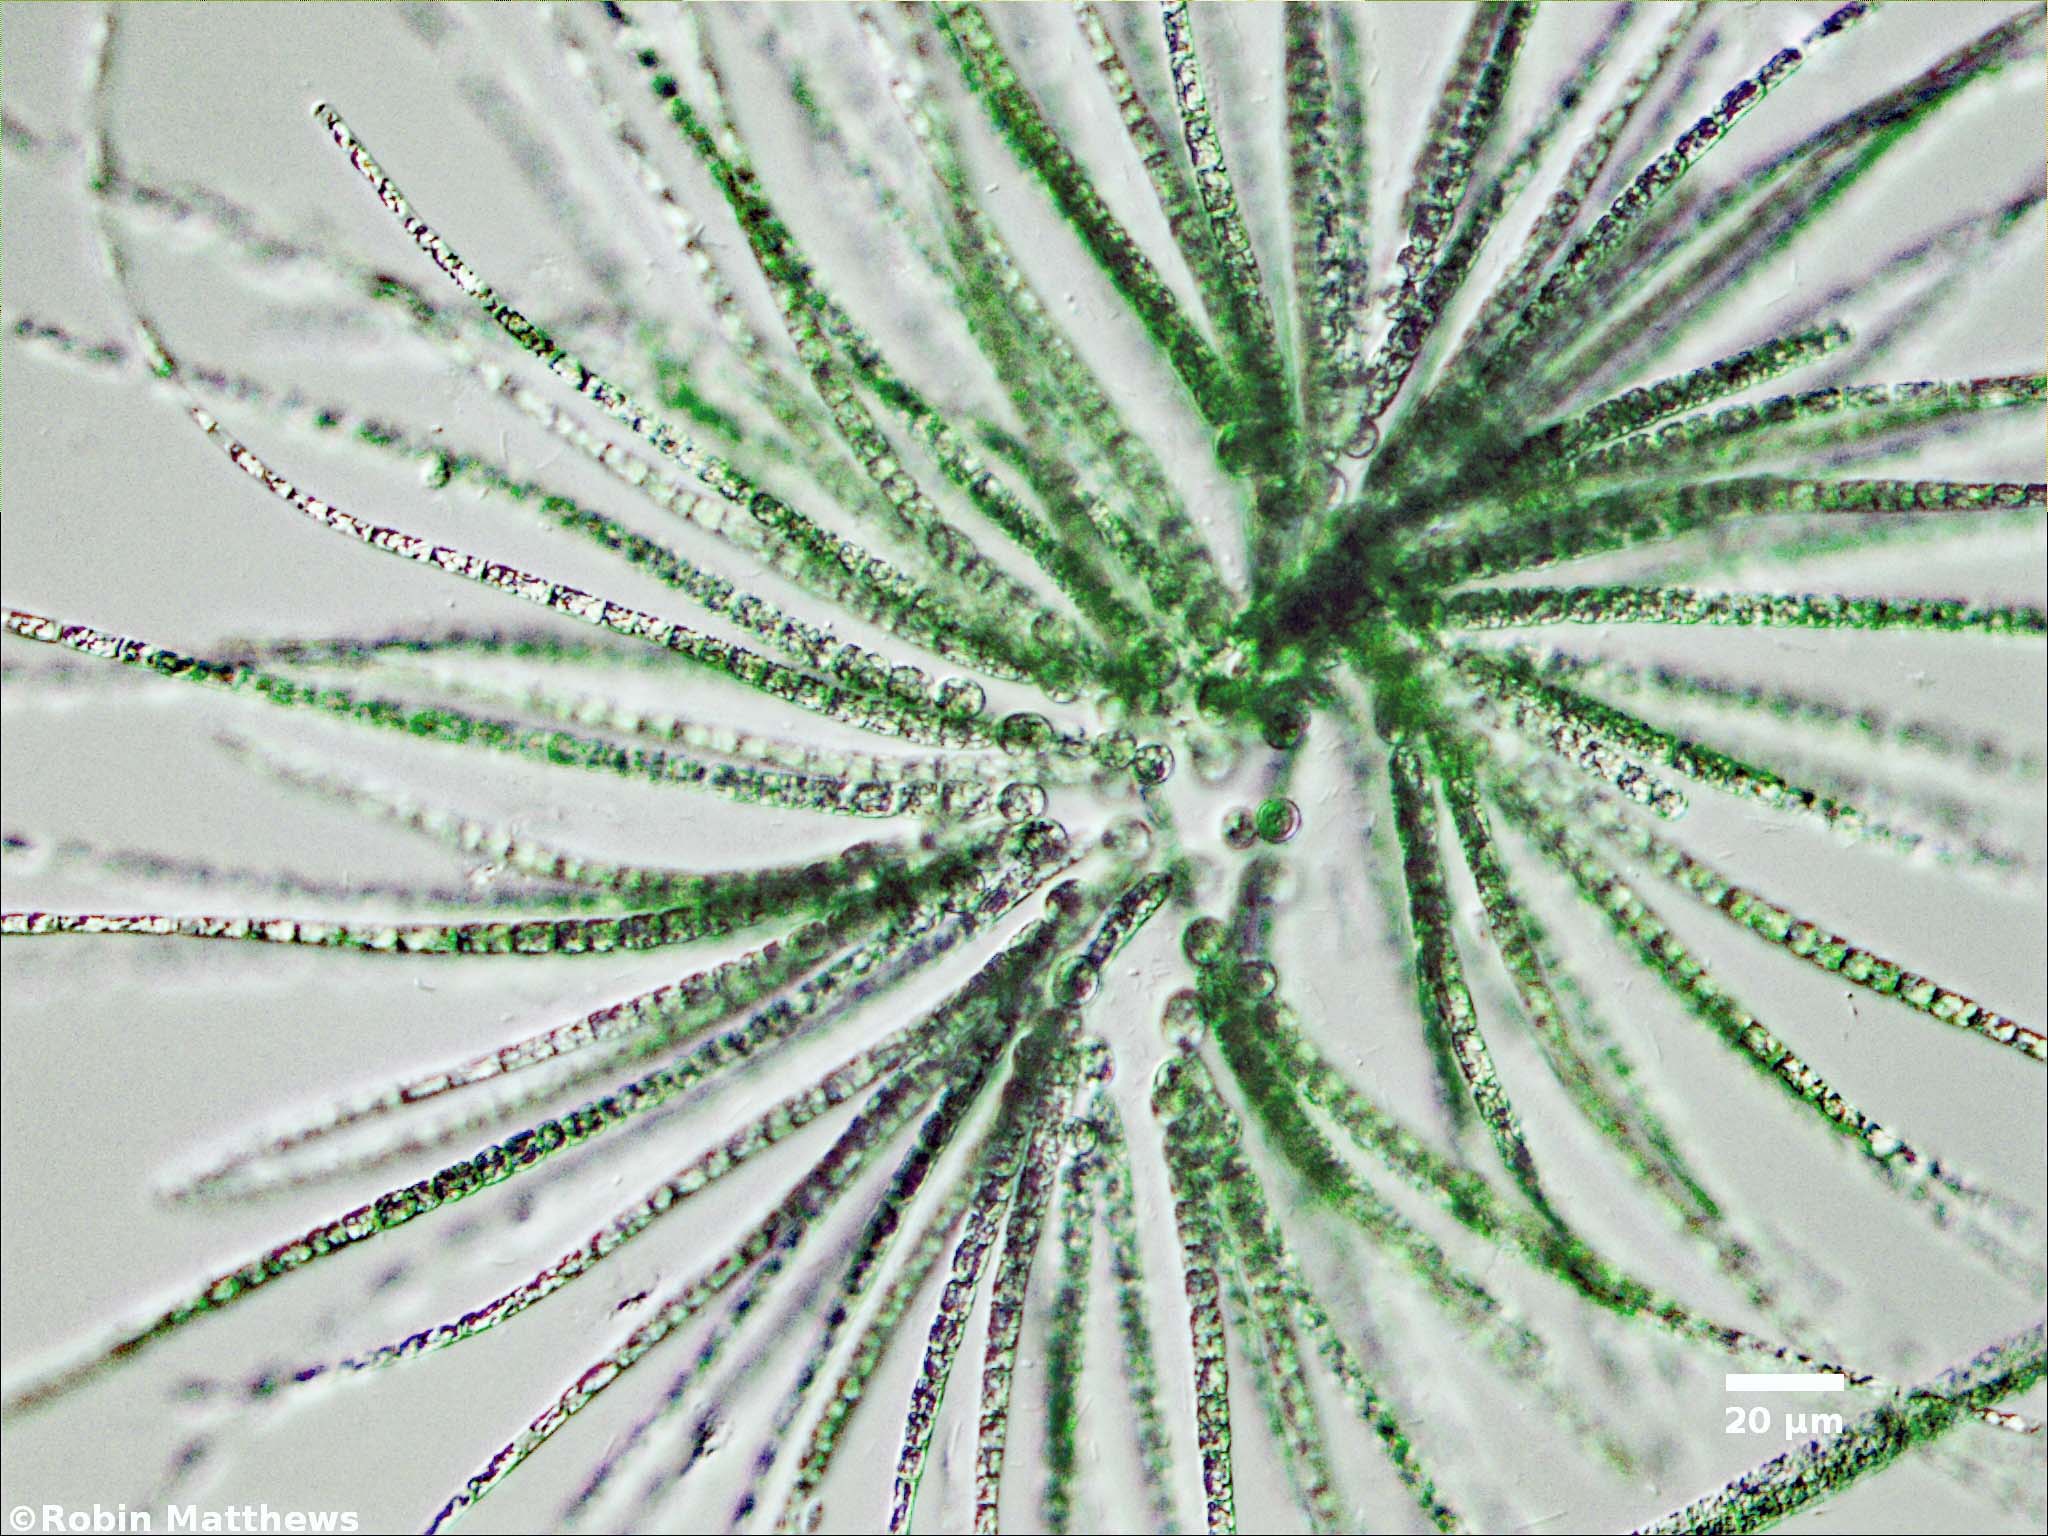 Cyanobacteria/Nostocales/Gloeotrichiaceae/Gloeotrichia/echinulata/gloeotrichia-echinulata-493.jpg